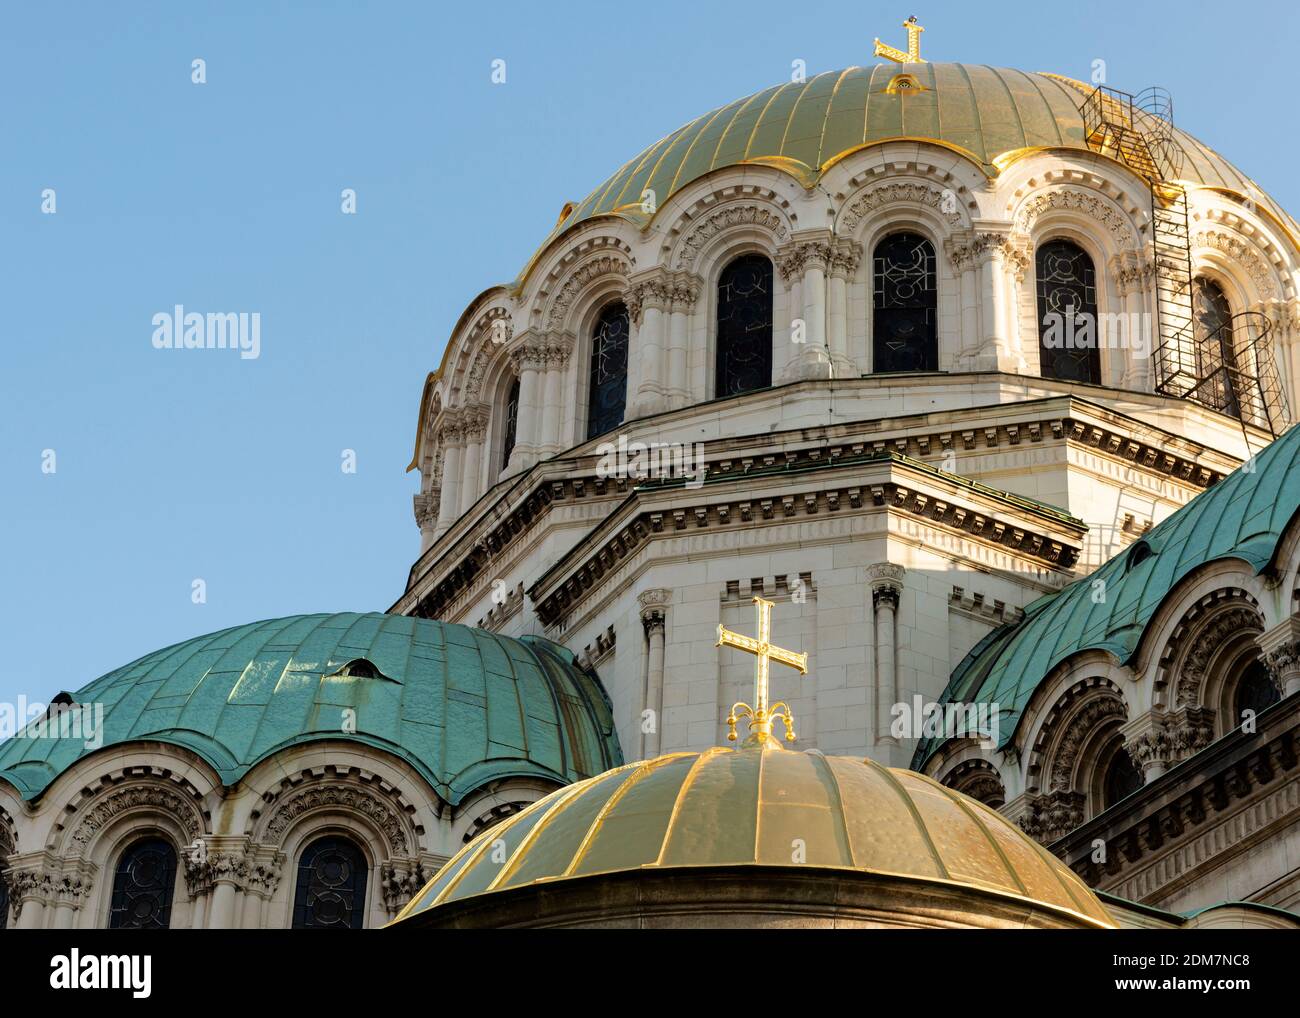 Die Alexander-Newski-Kathedrale architektonische Details der goldenen Kuppeln Als Kreuzkuppelbasilika des 19. Jahrhunderts in Sofia Bulgarien Osteuropa Stockfoto